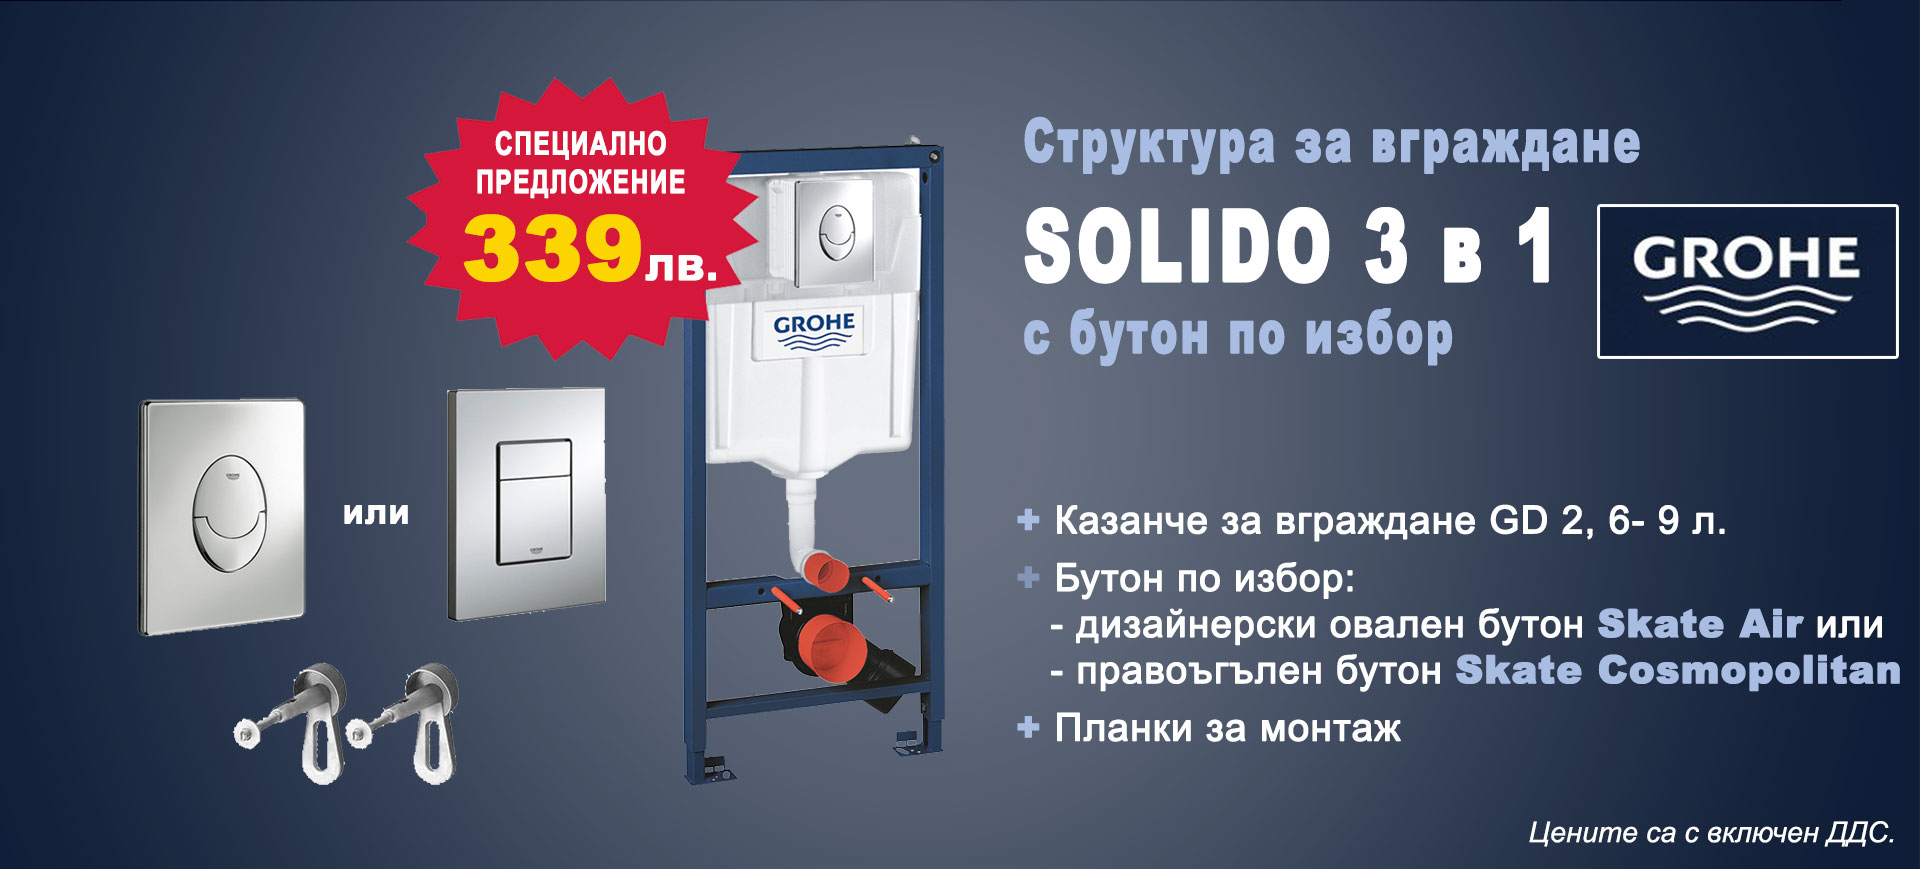 Комплект за вграждане GROHE Solido 3 в 1 на специална цена